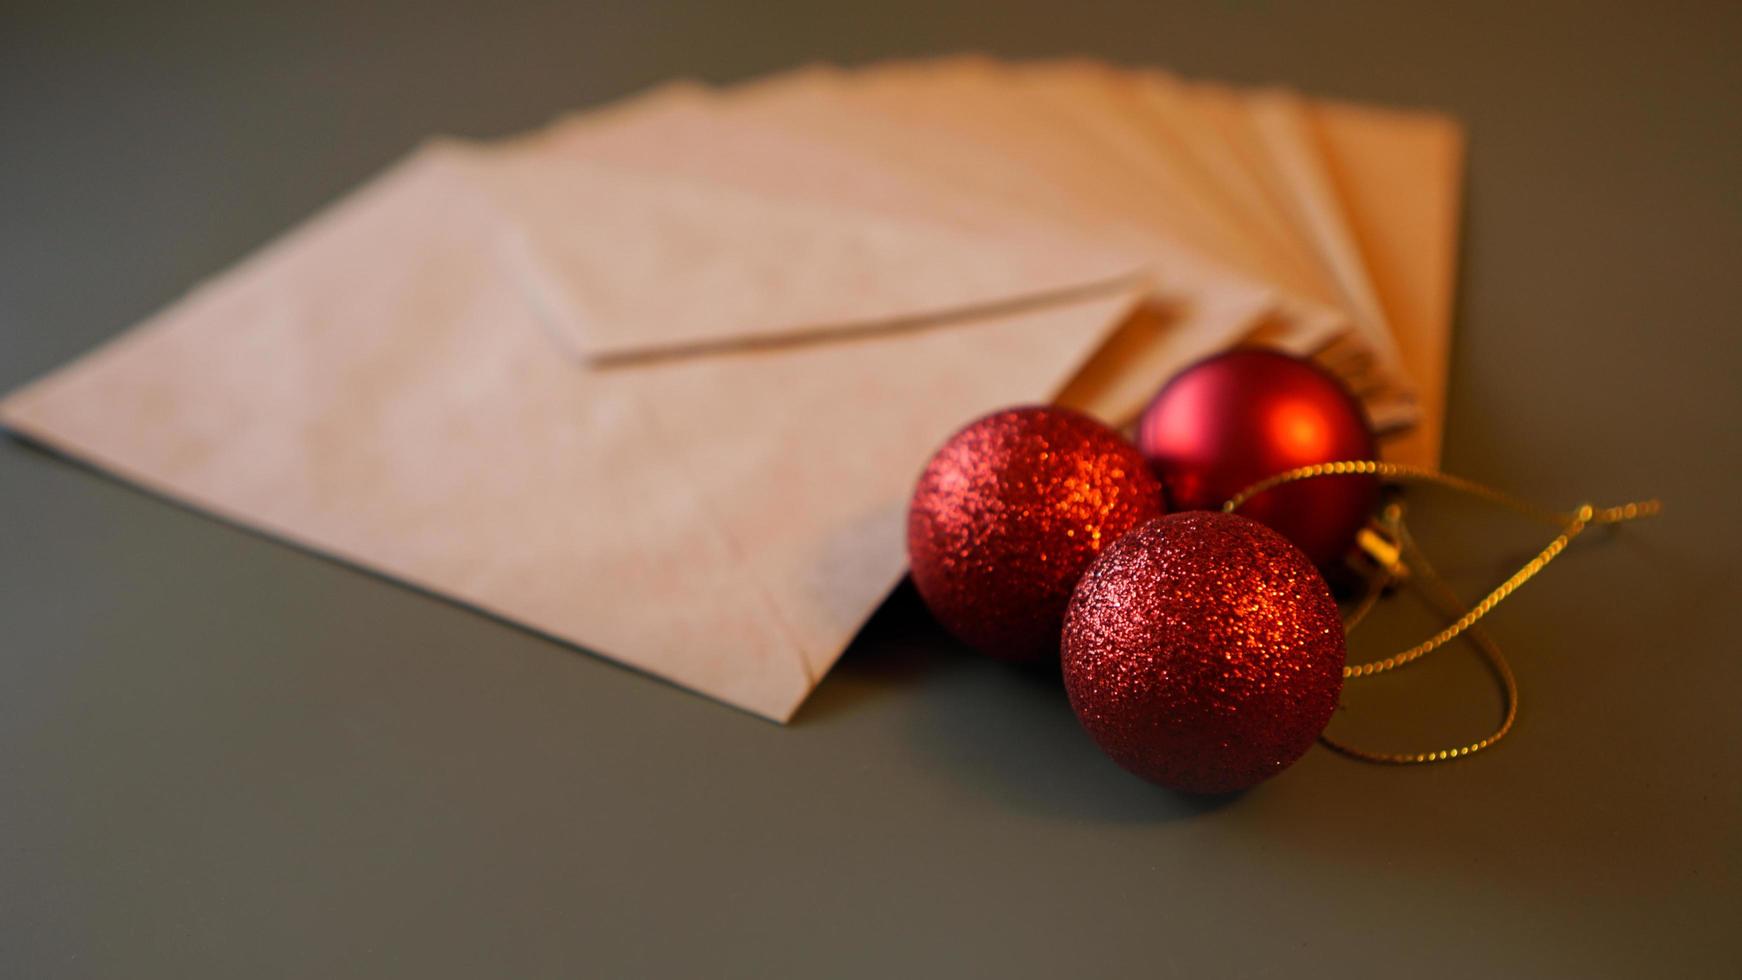 composición navideña. sobres artesanales y bolas rojas foto